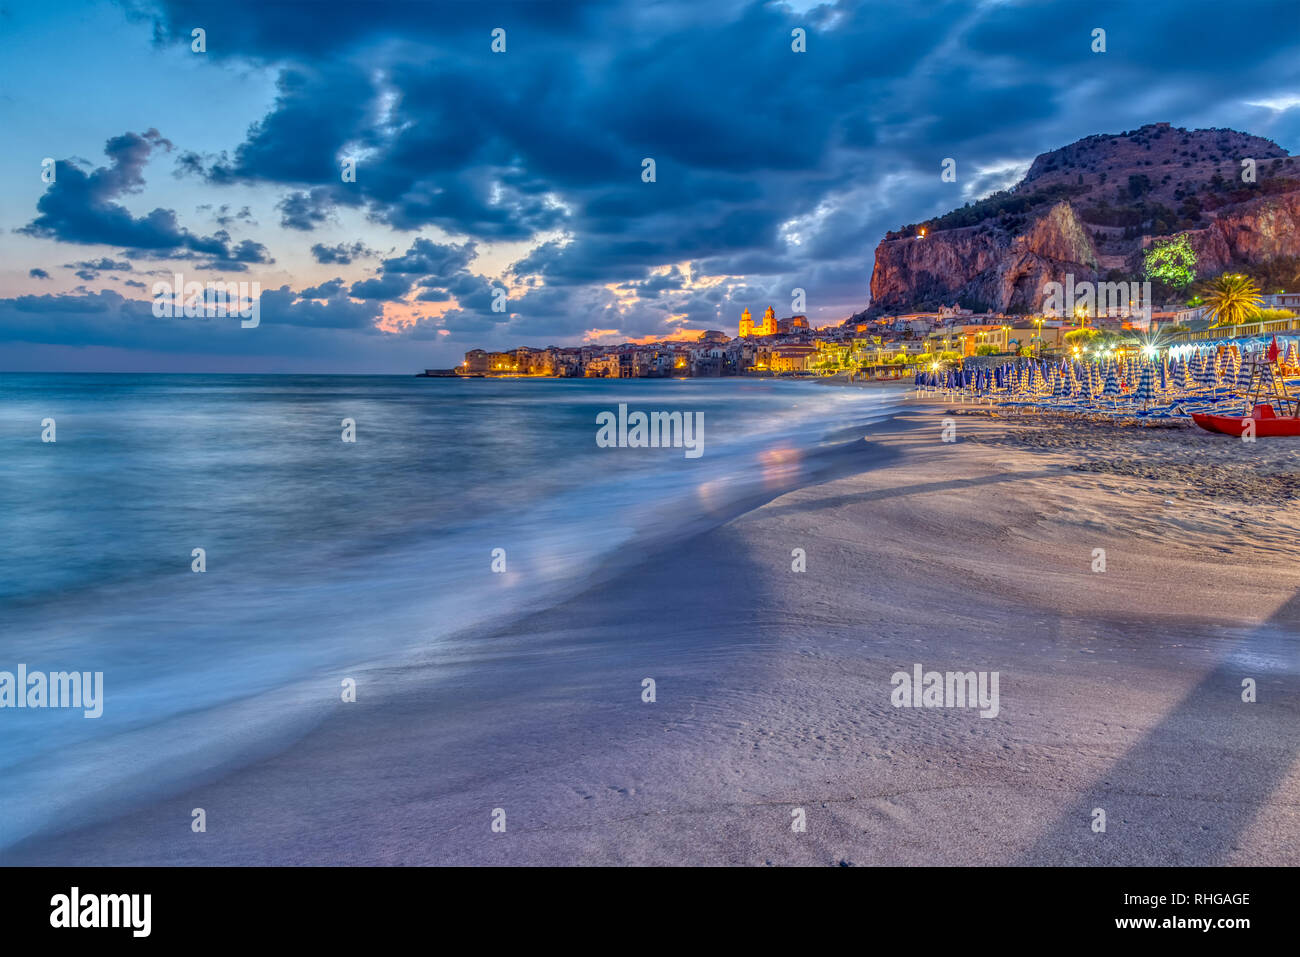 La plage de Cefalù, sur la côte nord de la Sicile avant le lever du soleil Banque D'Images